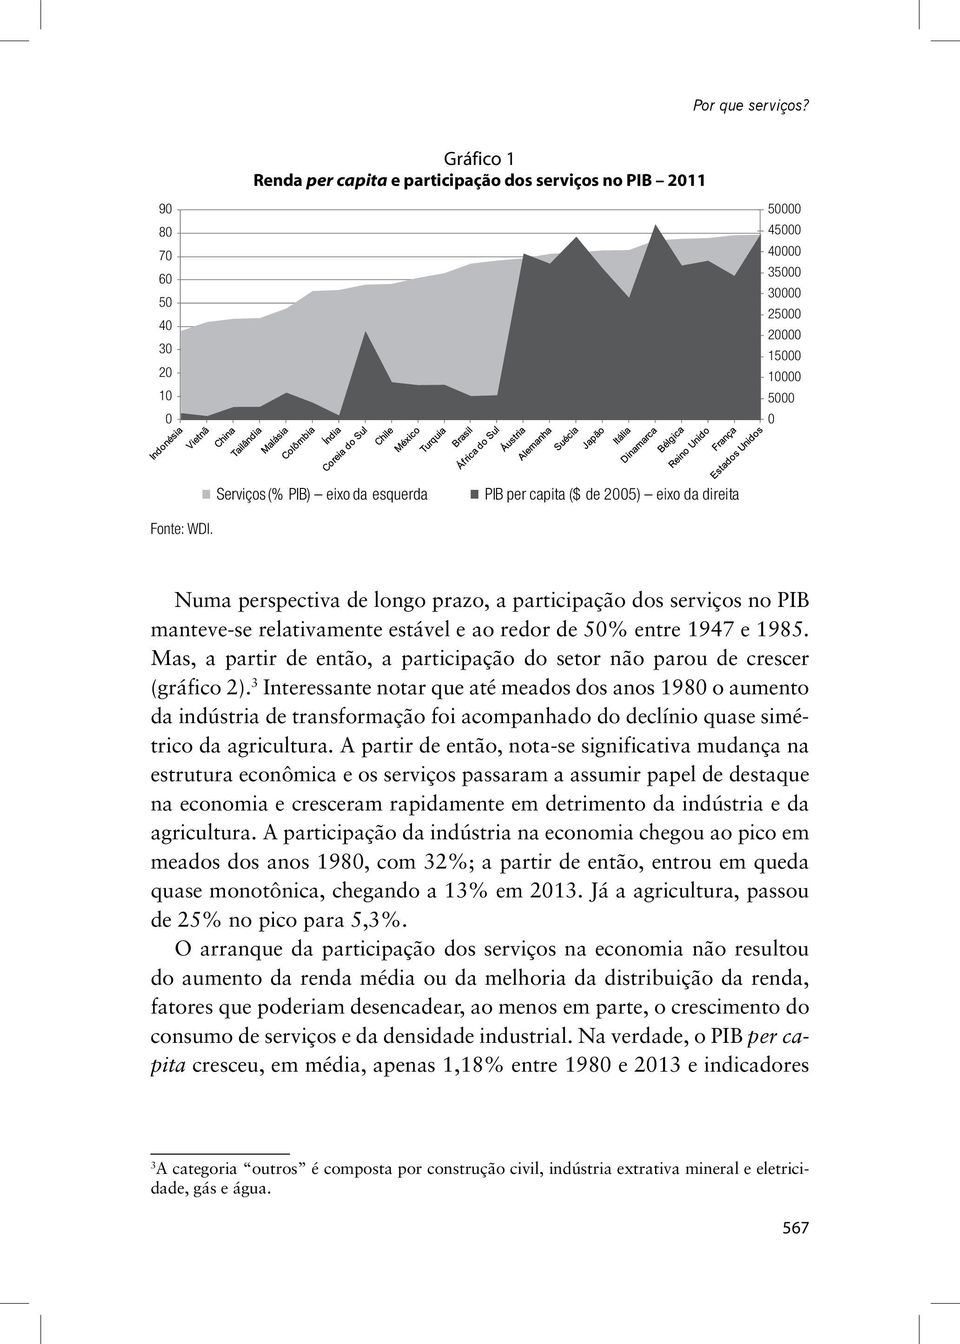 capita ($ de 2005) eixo da direita Fonte: WDI. Numa perspectiva de longo prazo, a participação dos serviços no PIB manteve-se relativamente estável e ao redor de 50% entre 1947 e 1985.